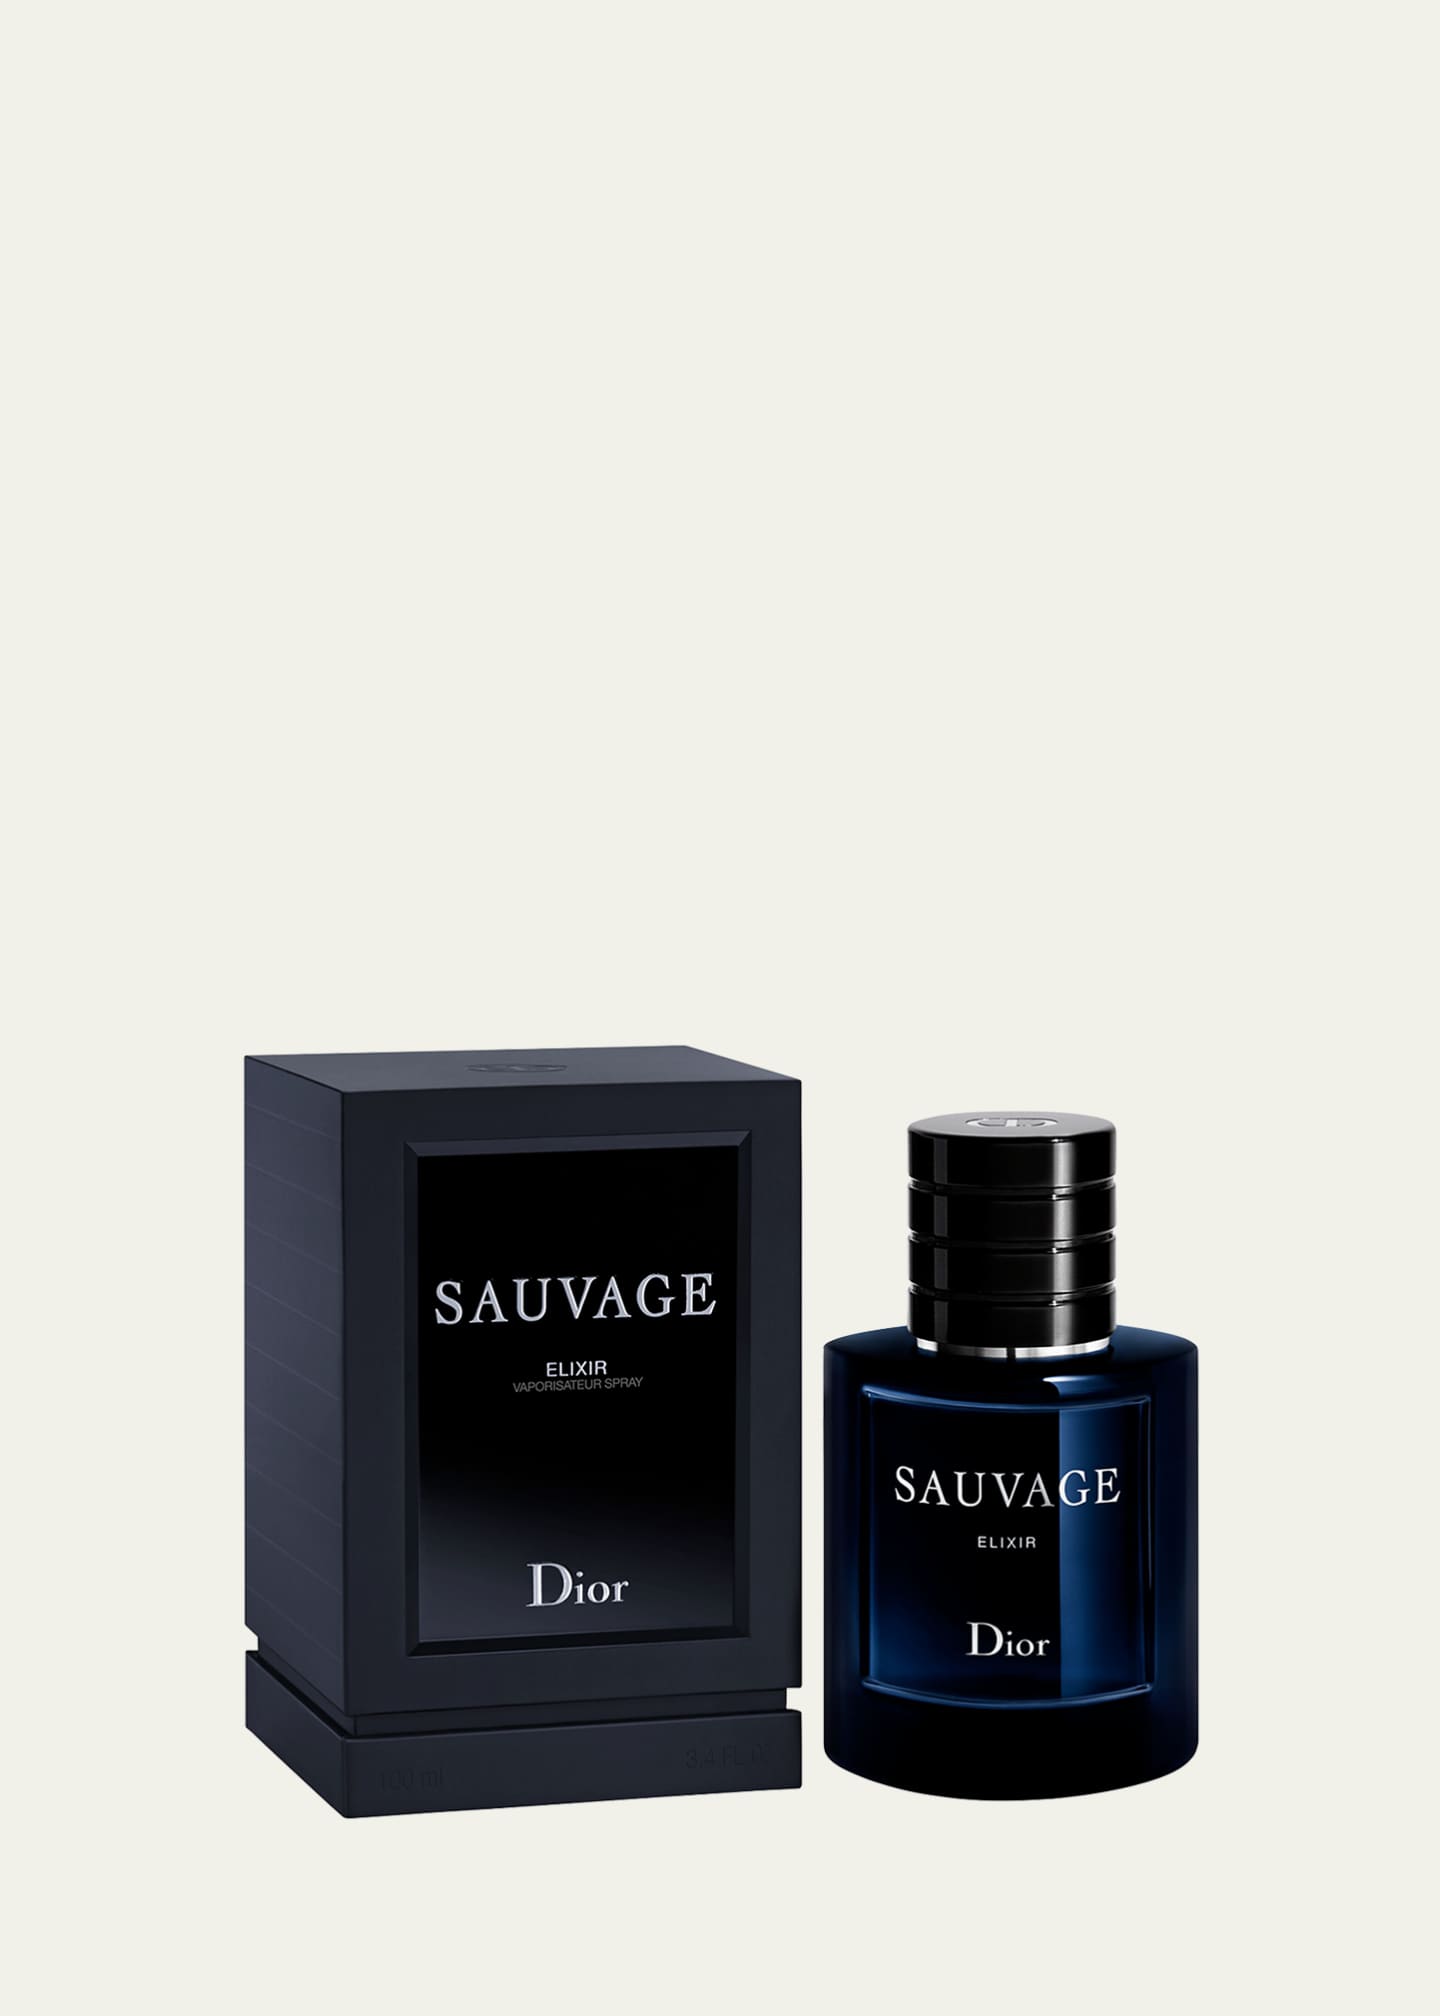 Dior Sauvage Eau de Parfum 3.4 oz / 100 ml Spray For Men